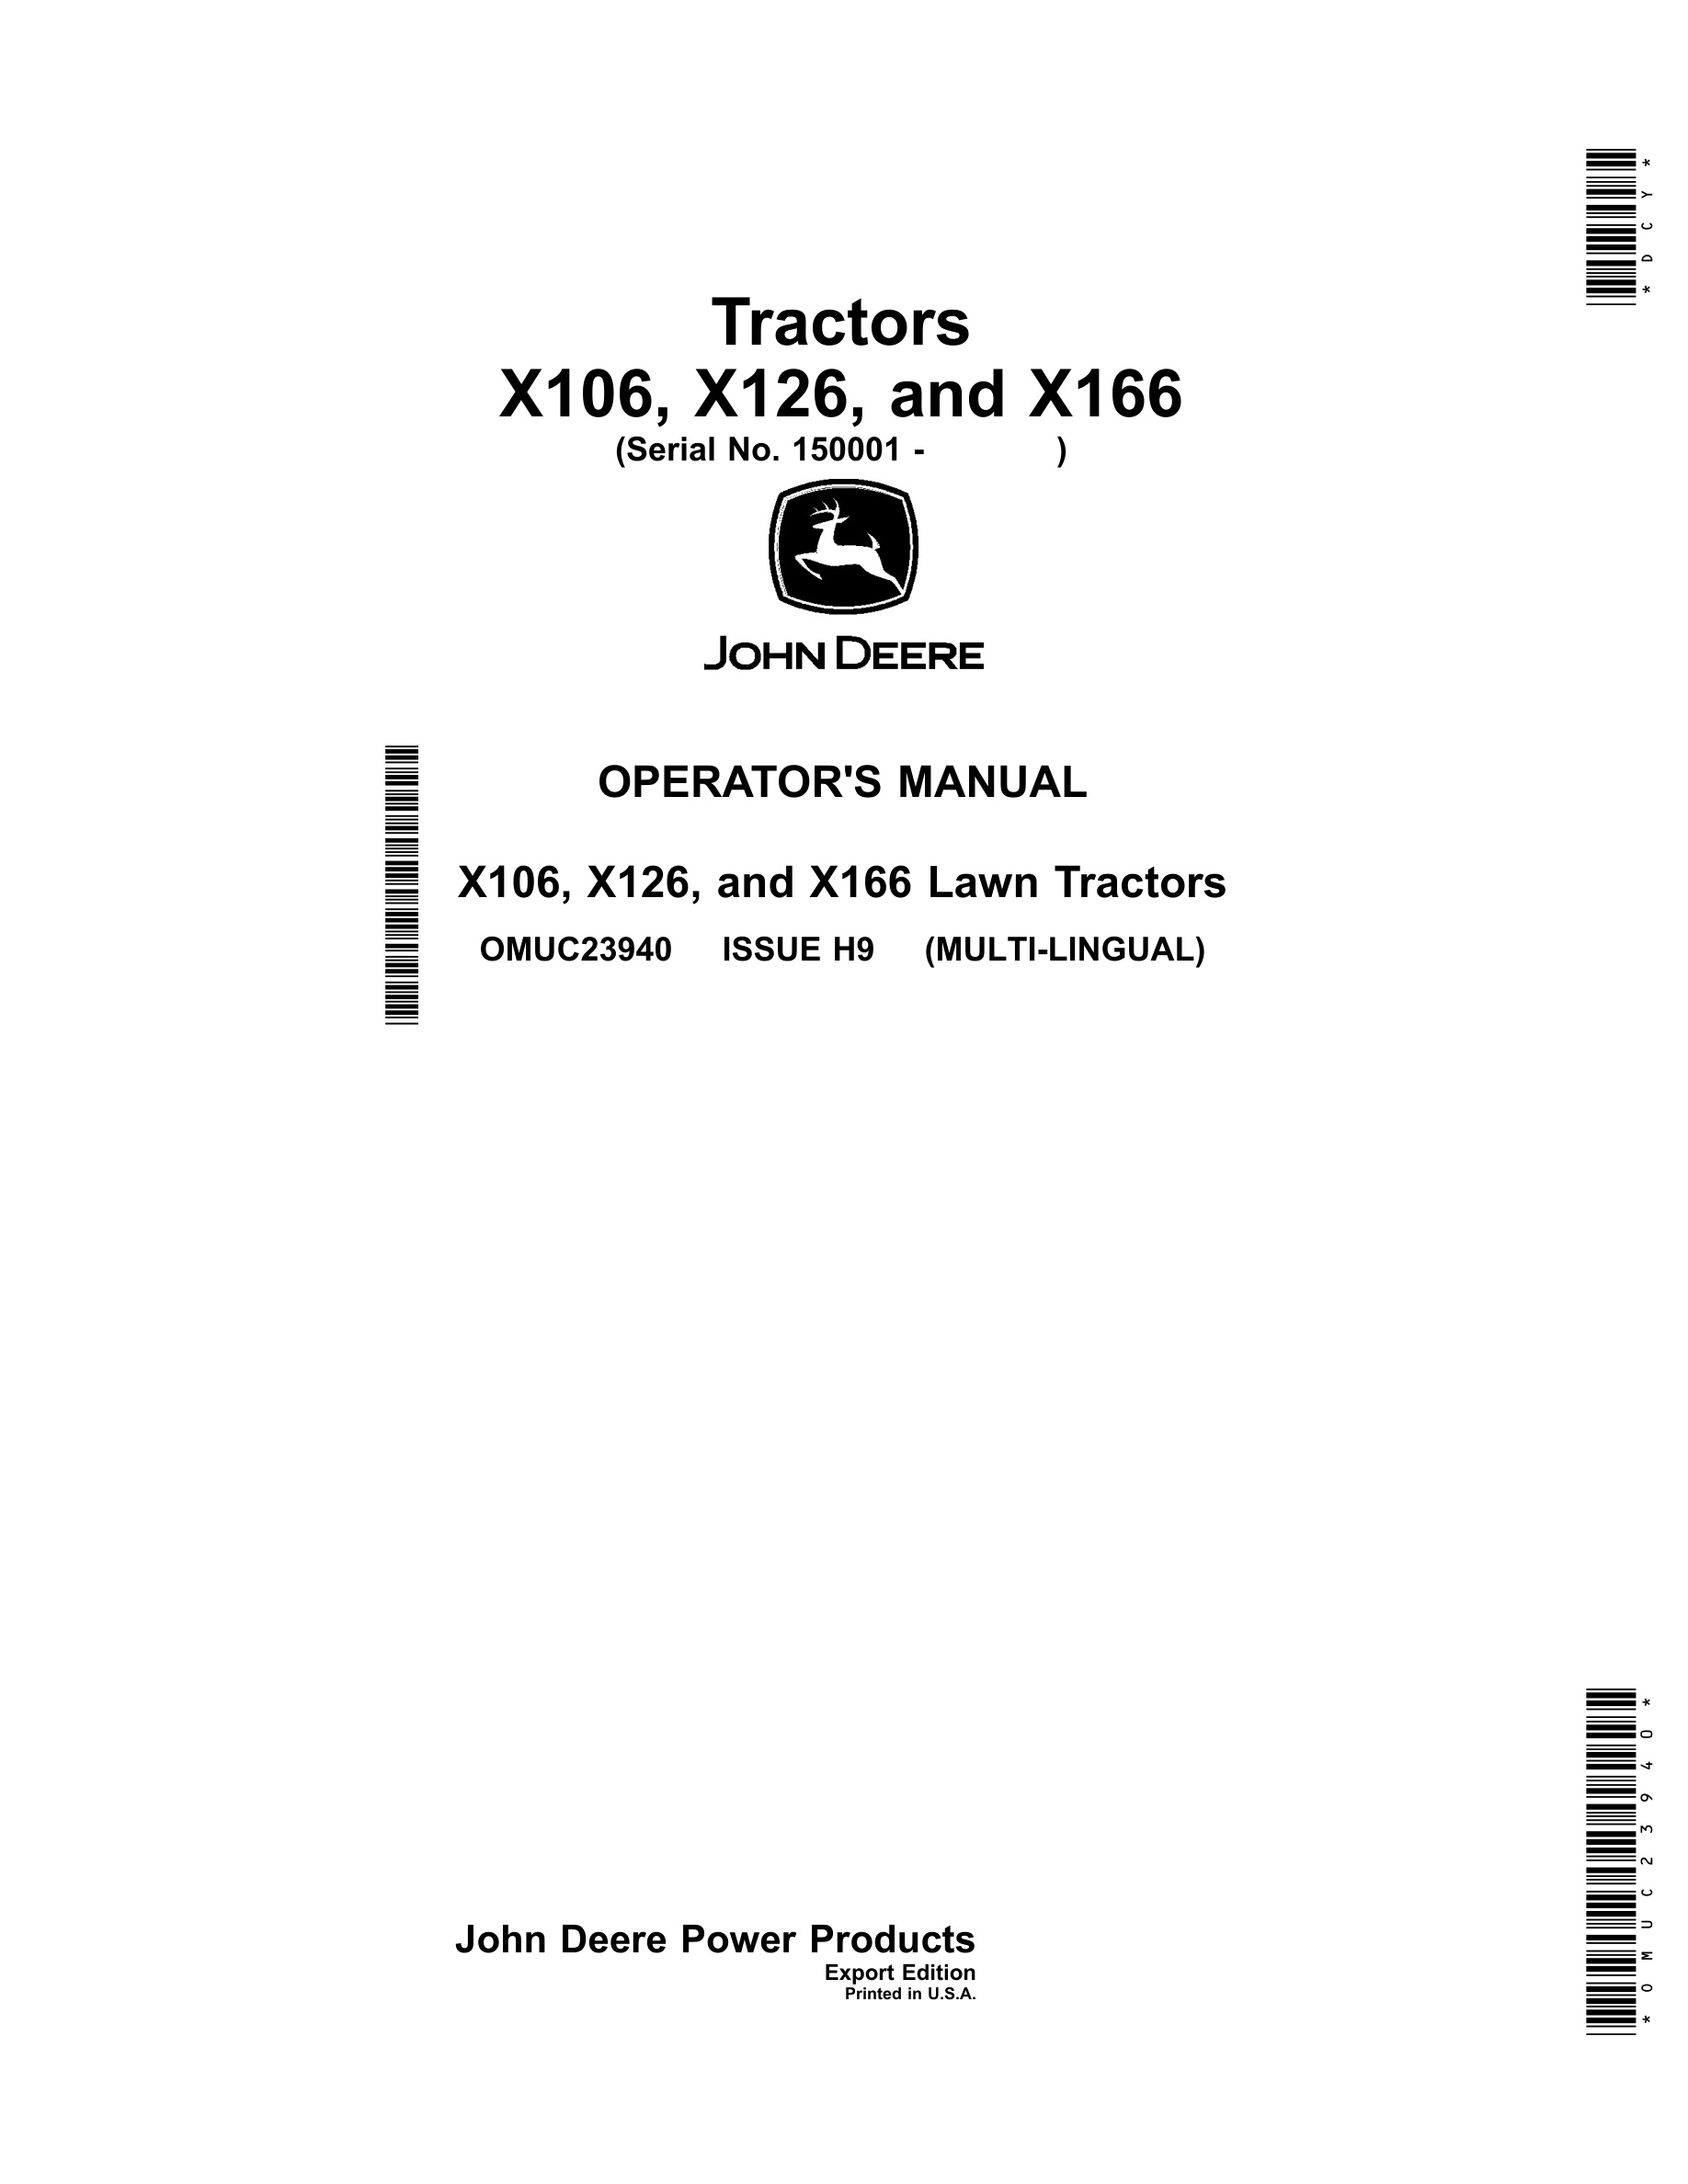 John Deere X106, X126, And X166 Lawn Tractors Operator Manuals OMUC23940-1